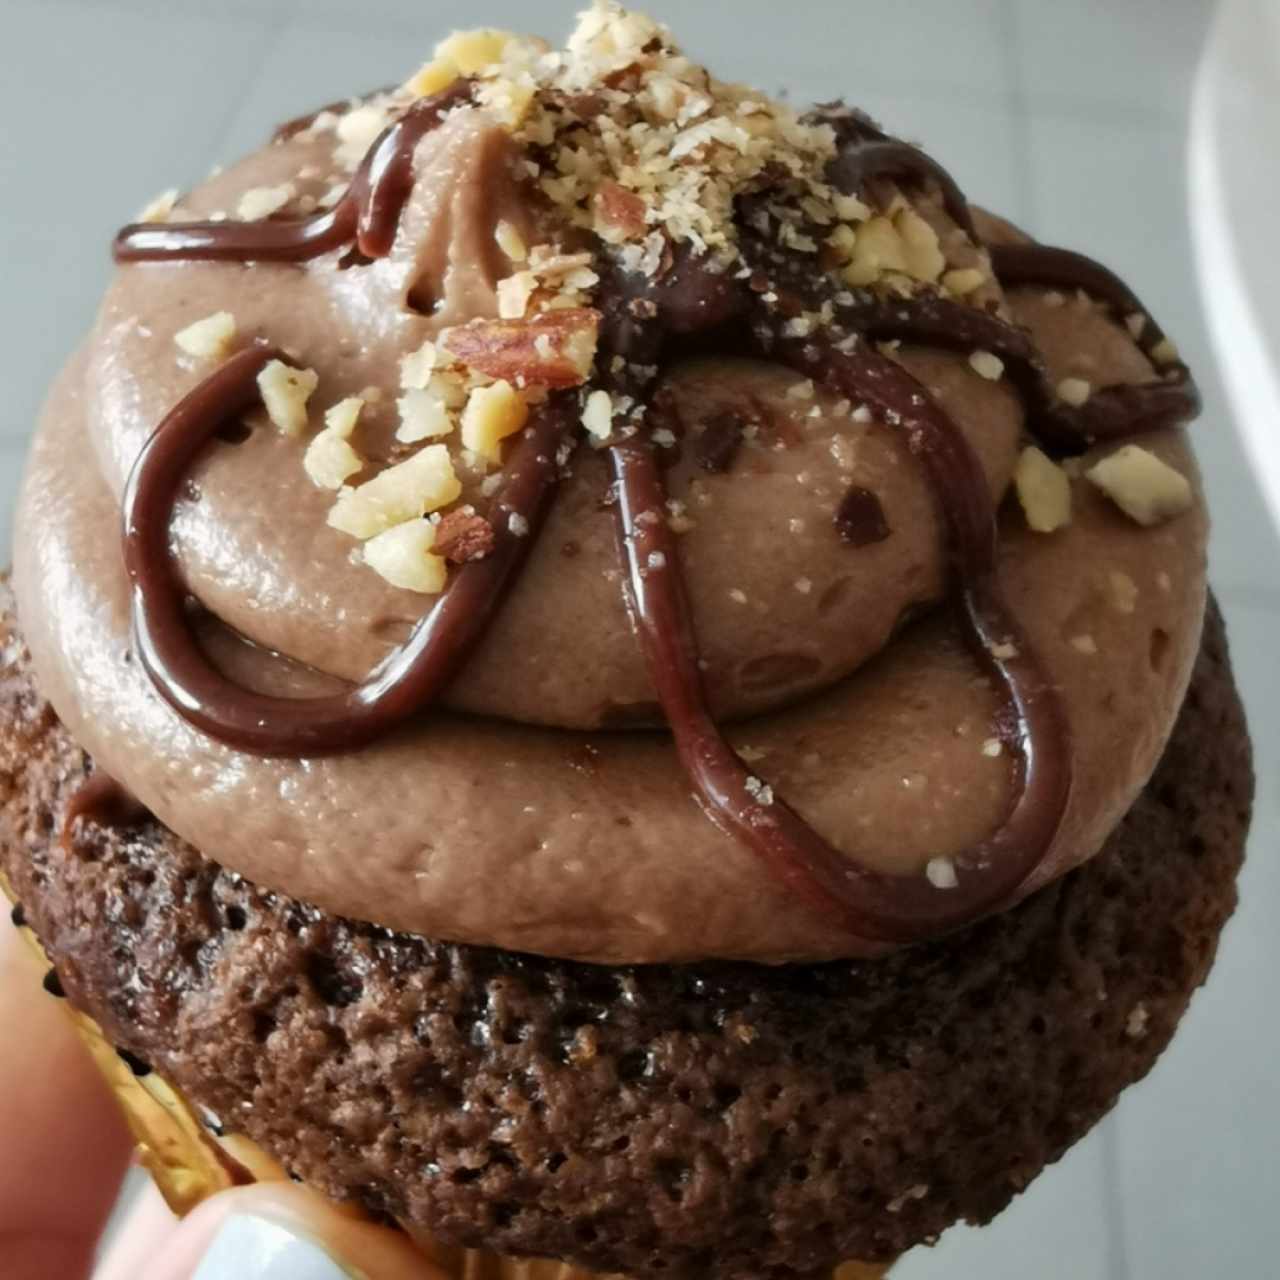 Cupcakes - Nutella